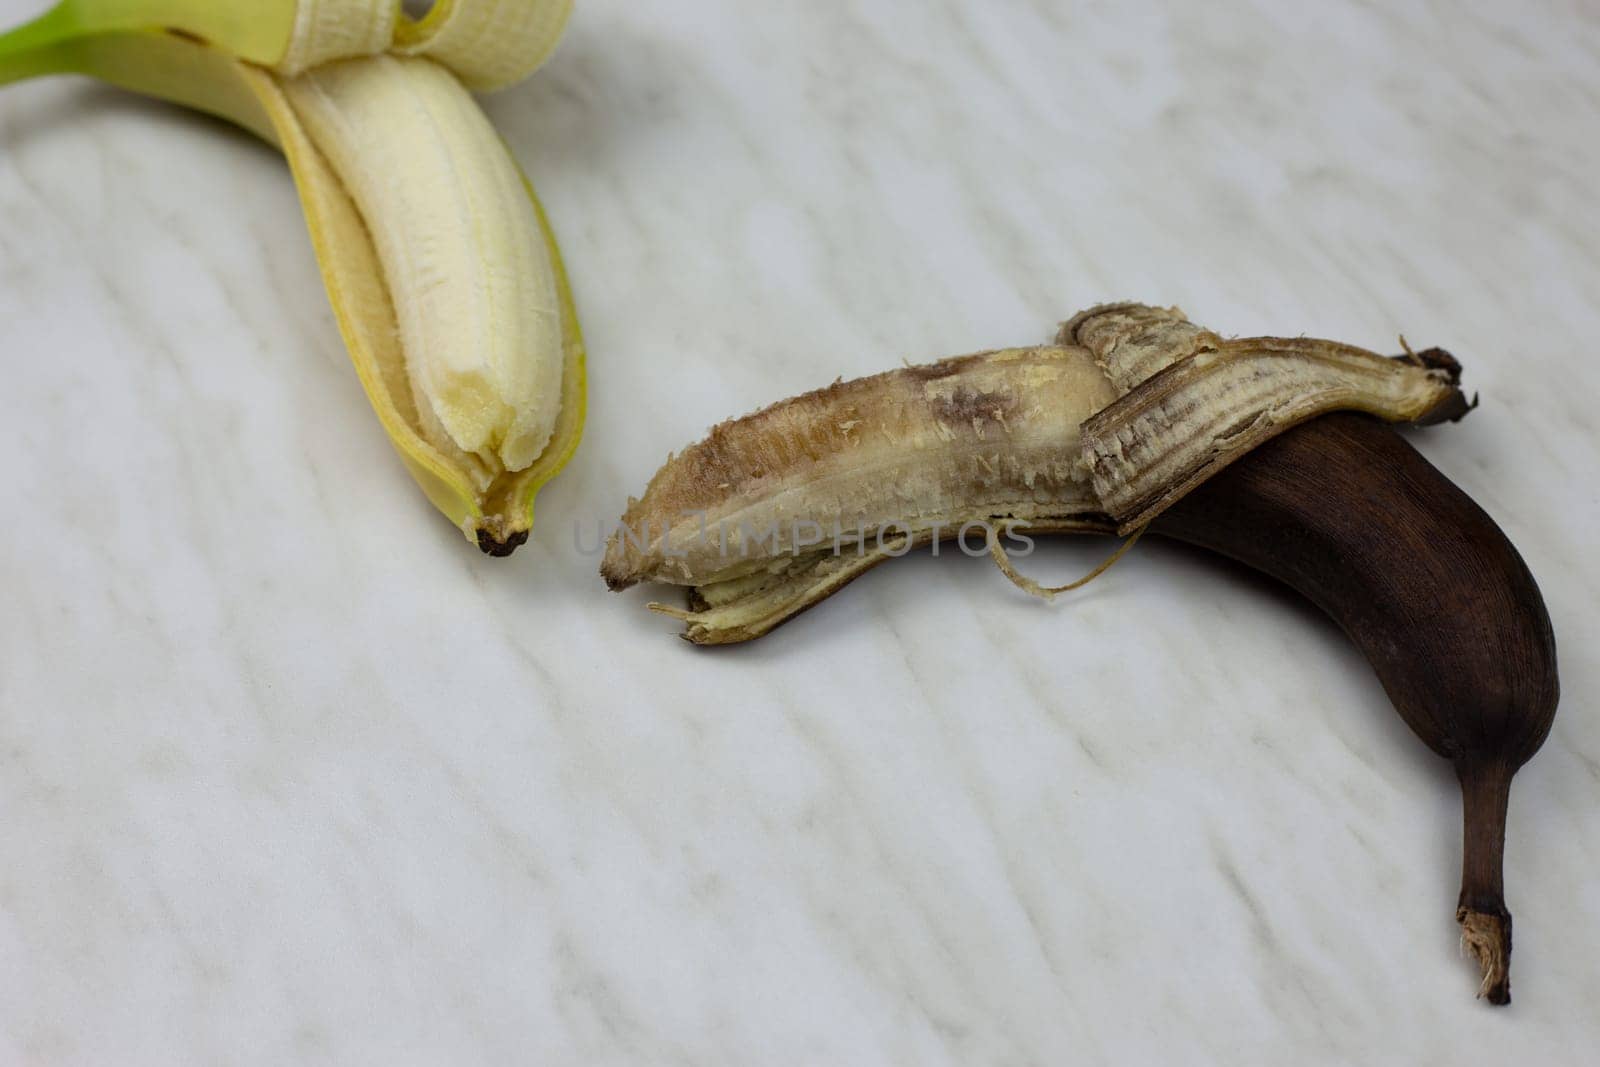 Rotten spoiled banana in open peel next to fresh banana fruit on white table, phase of spoiled fruit